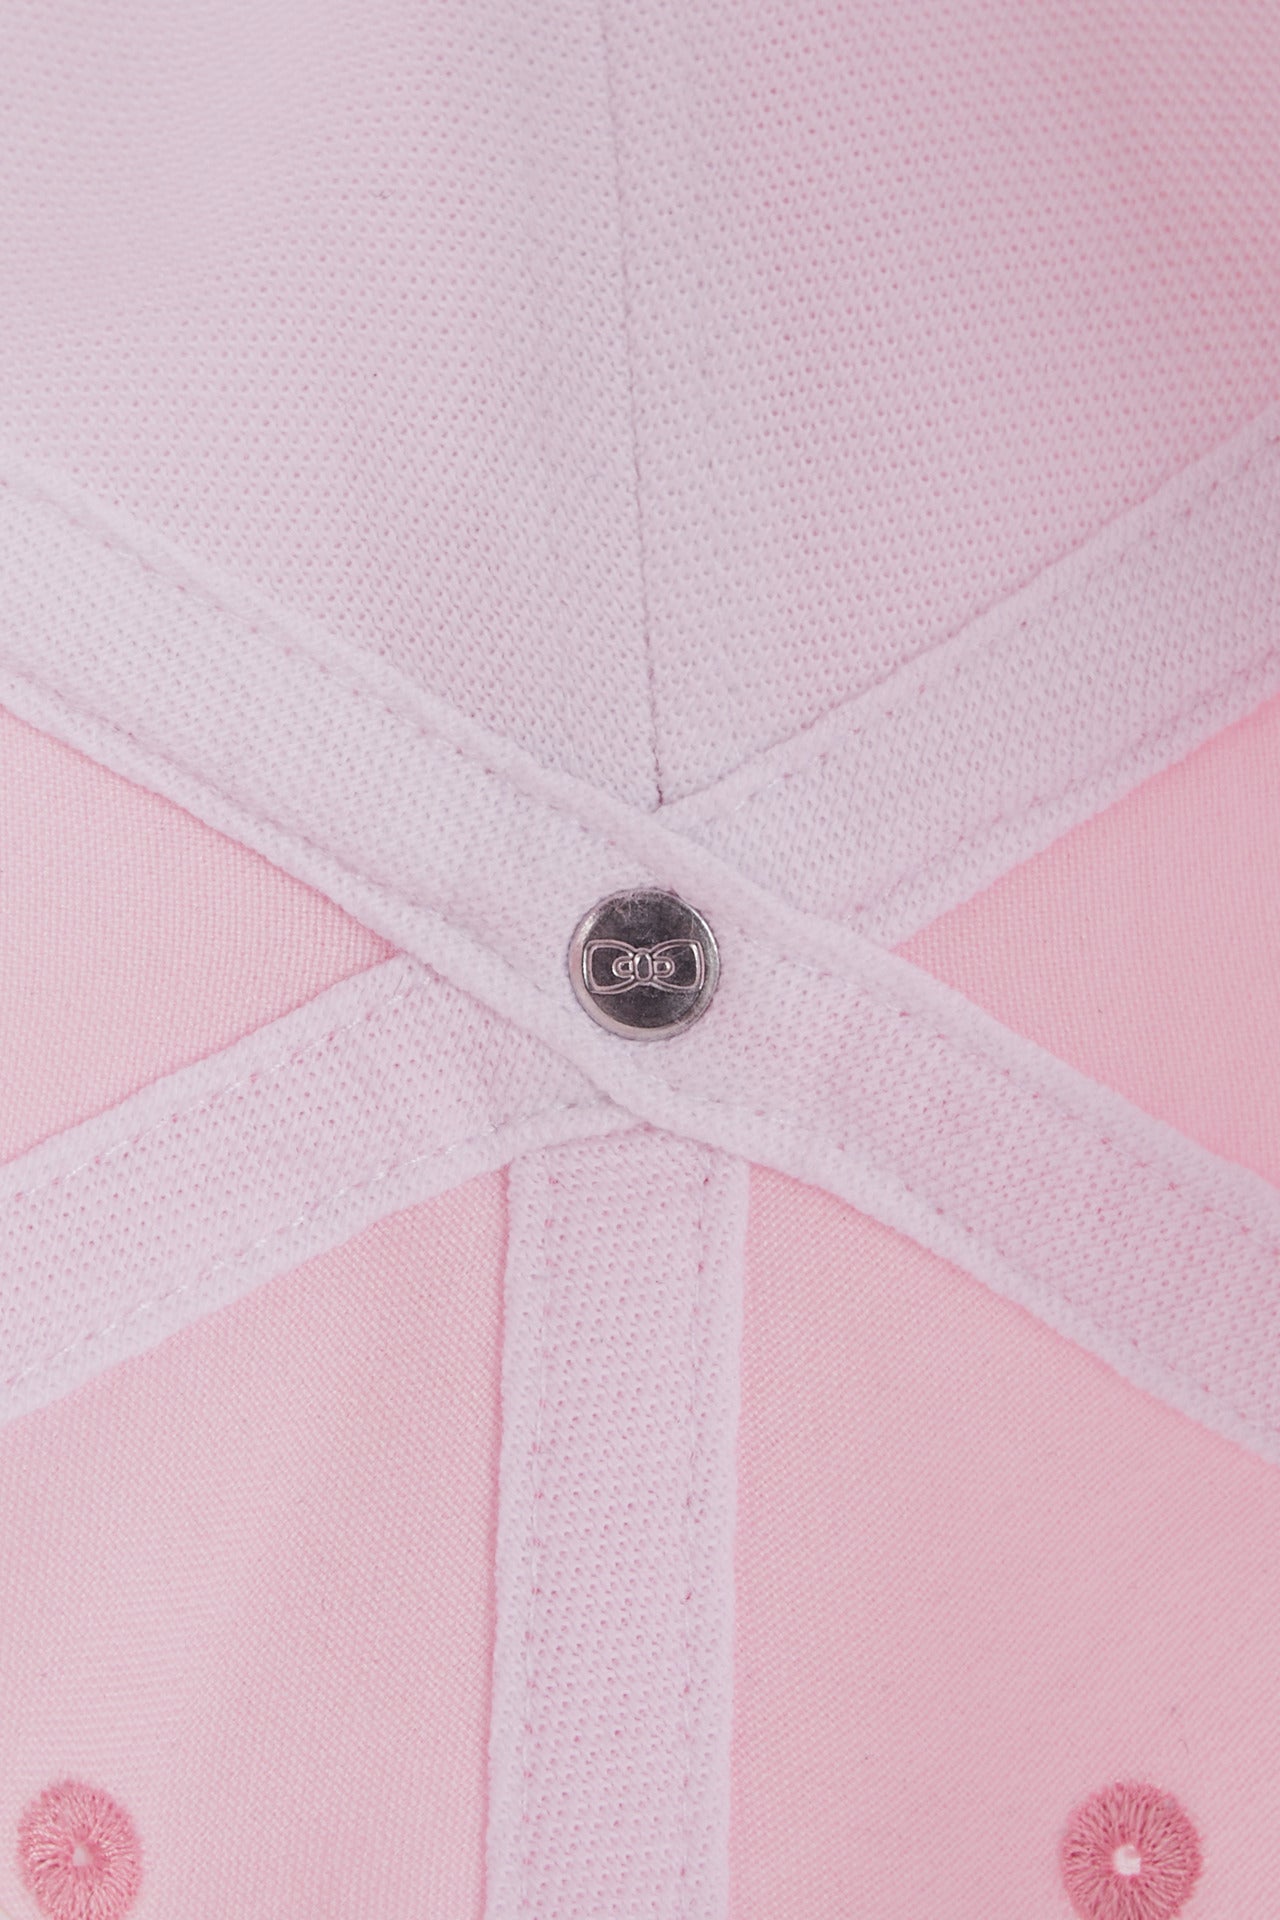 Casquette rose unie en coton - Image 4